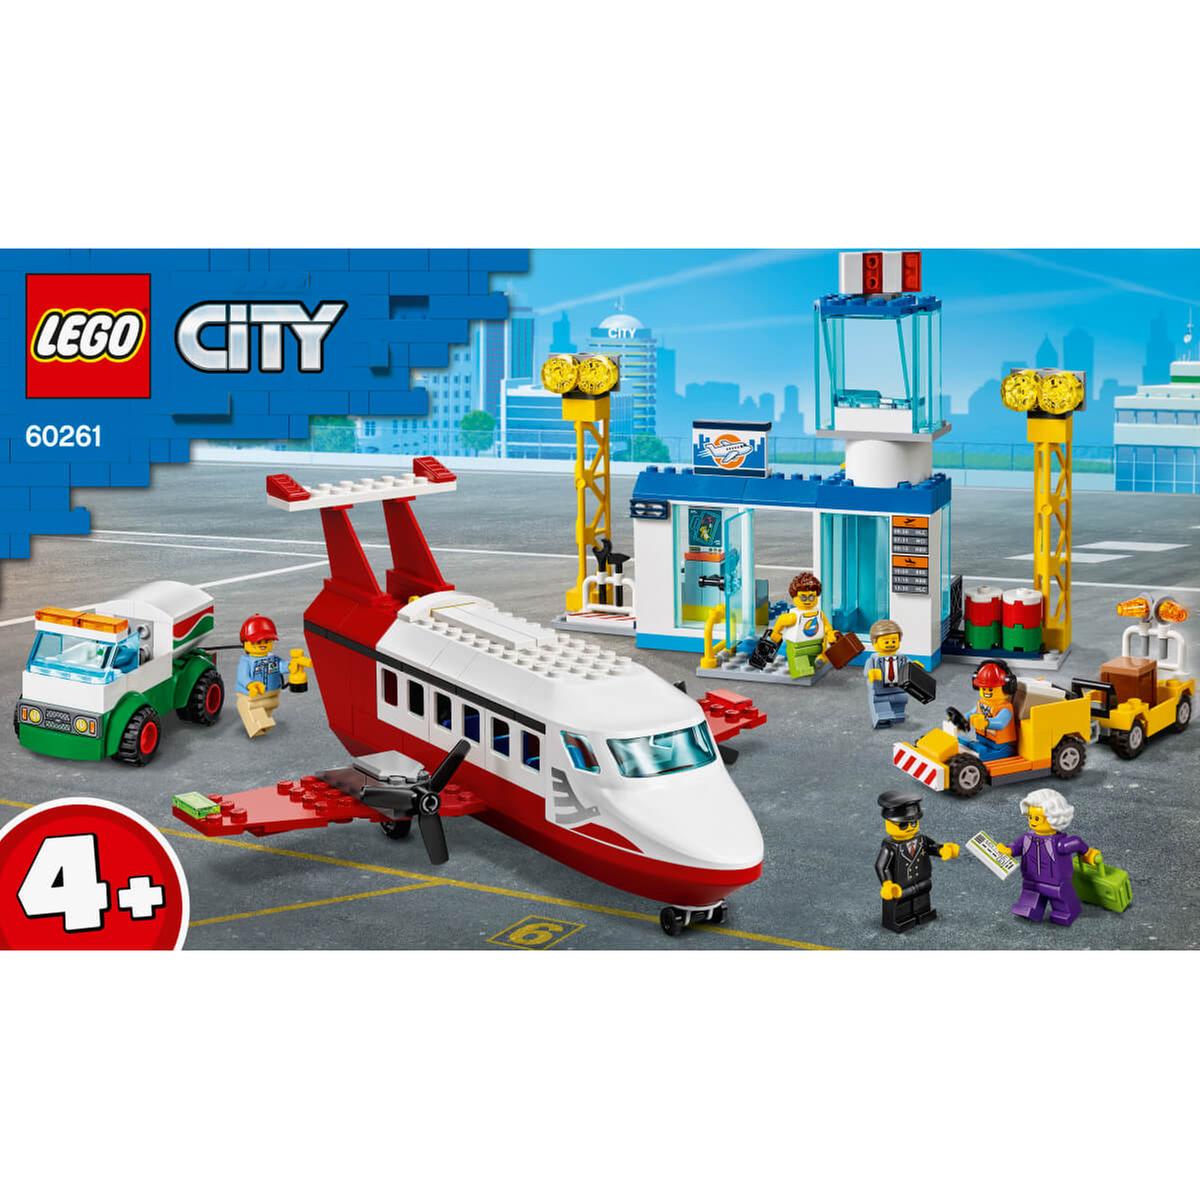 LEGO City - Aeropuerto Central - 60261 | Lego City | Toys"R"Us España